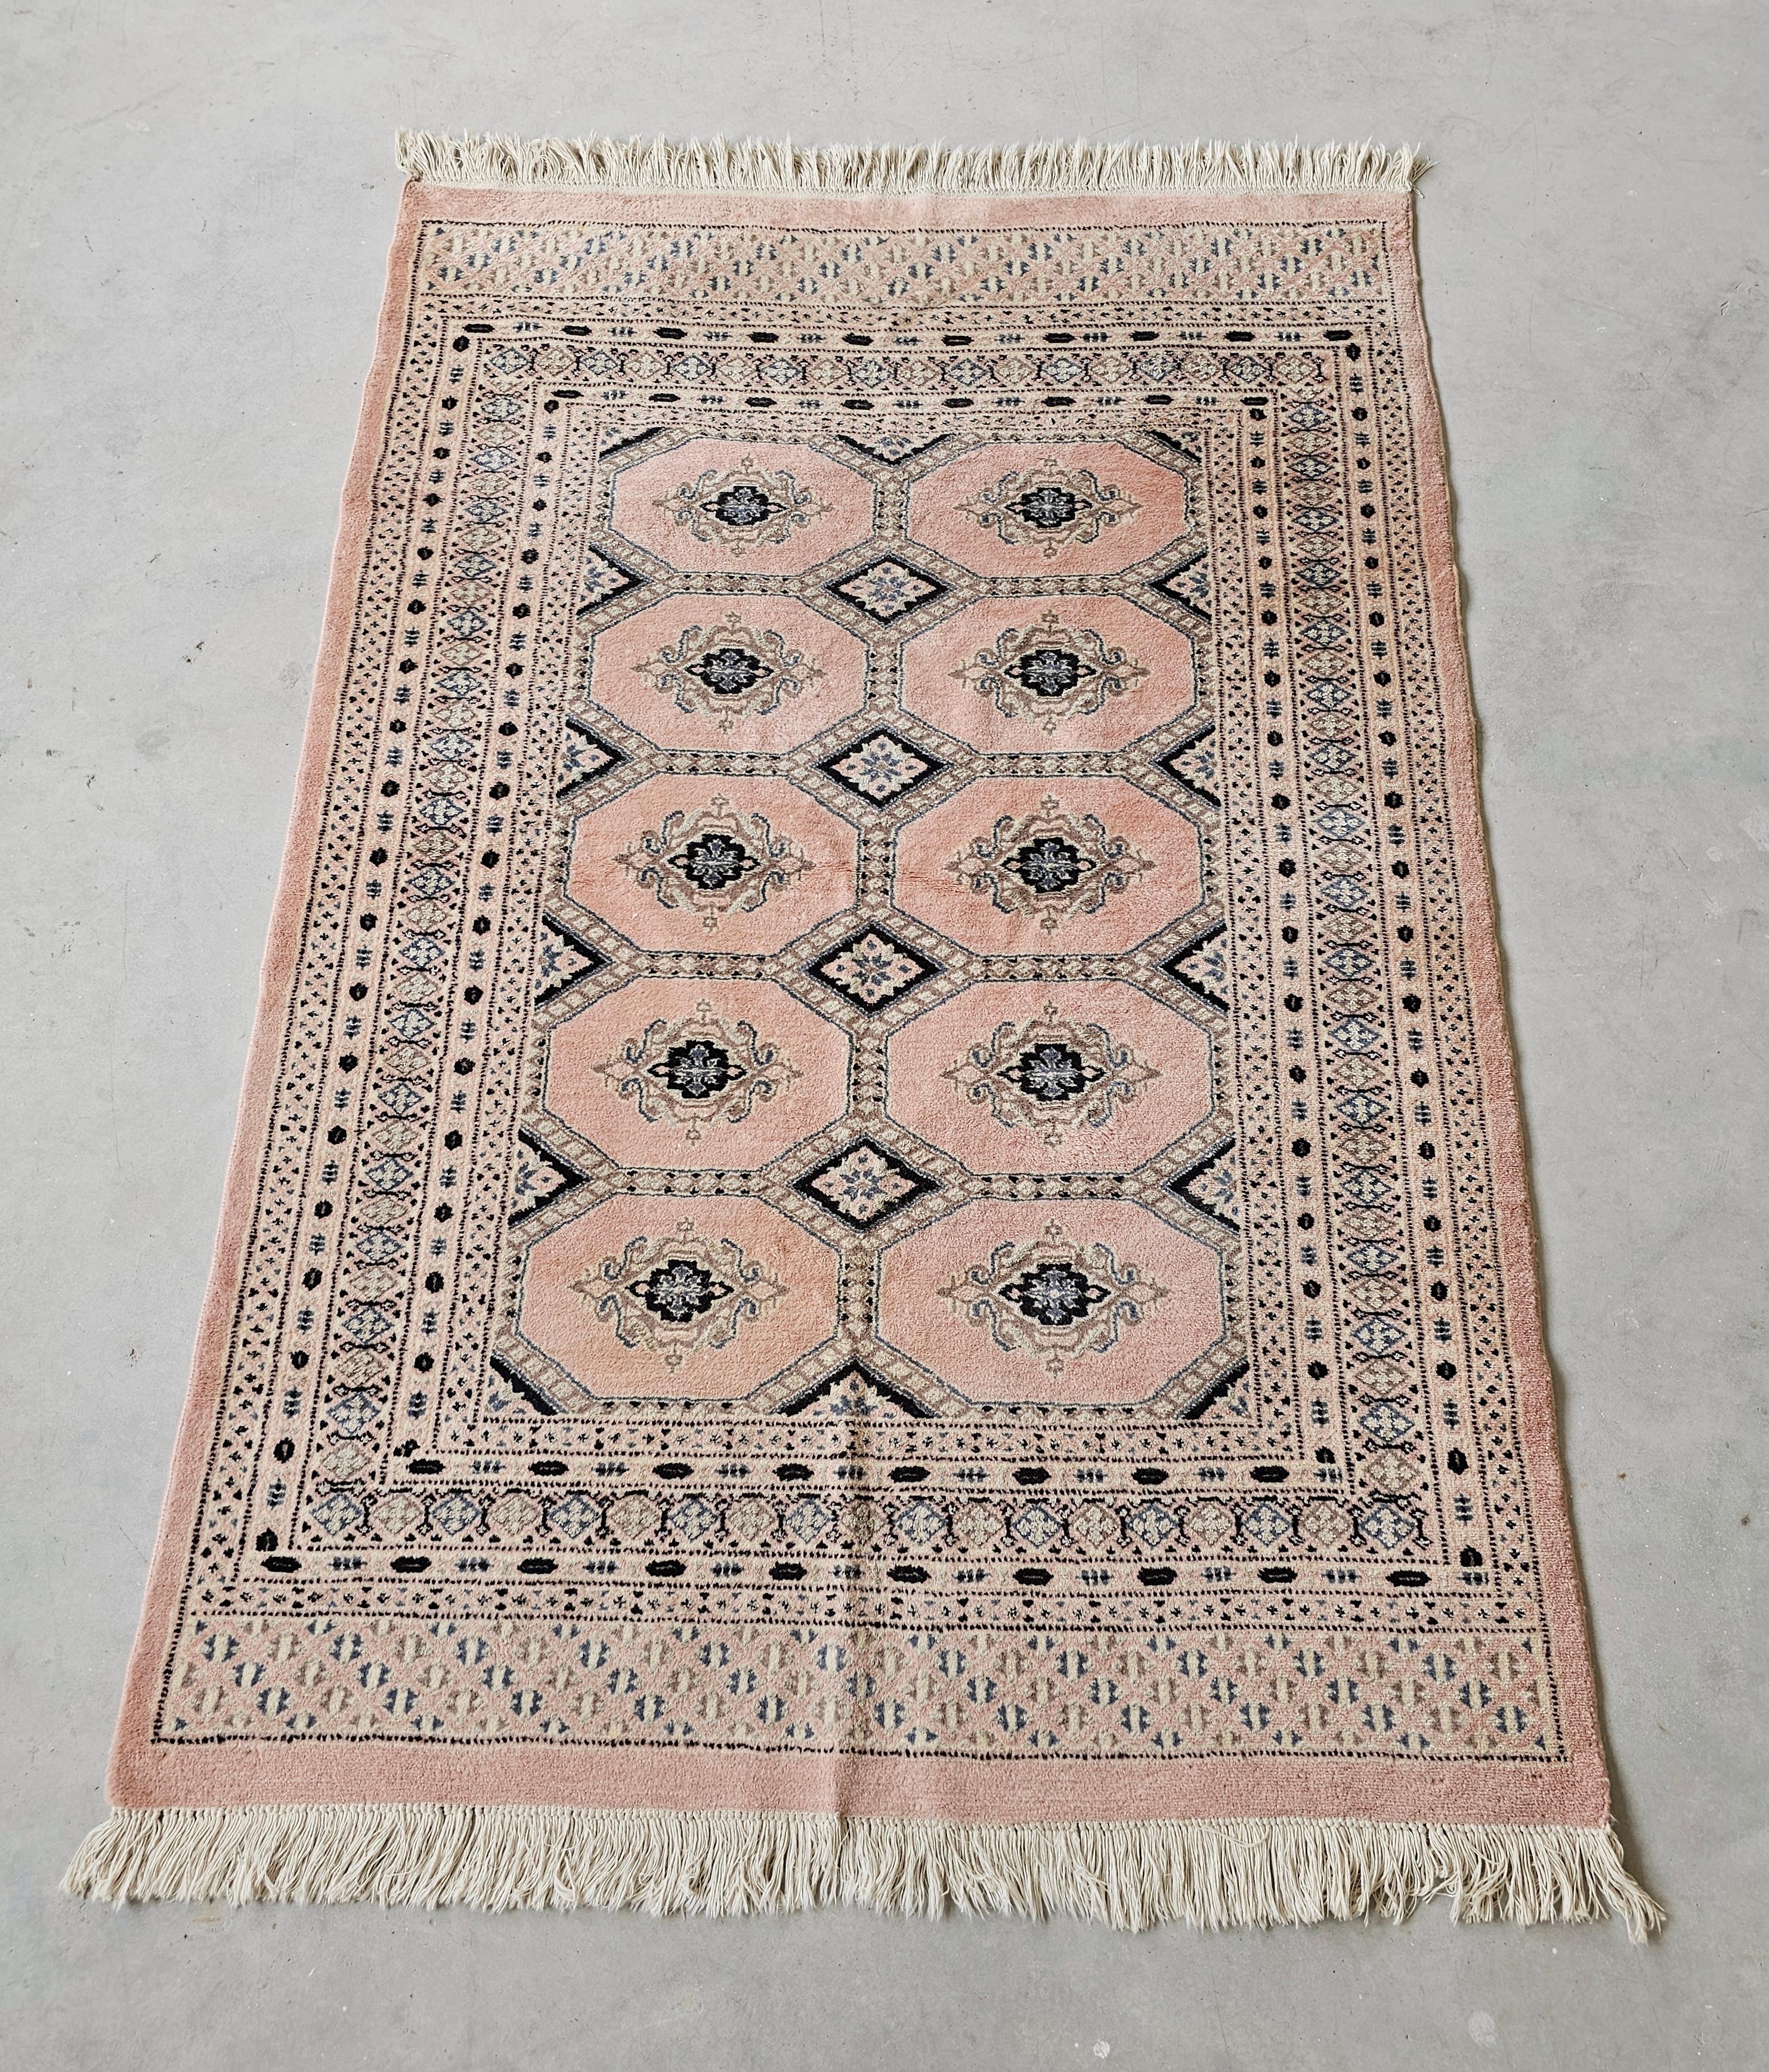 In diesem Angebot finden Sie einen Bokhara-Teppich in einem sehr seltenen puderrosa Ton. Es handelt sich um einen handgeknüpften Teppich aus 100 % Wolle mit einer hohen Knotendichte. Hergestellt in Pakistan, ca. 1950er Jahre.

Sehr guter